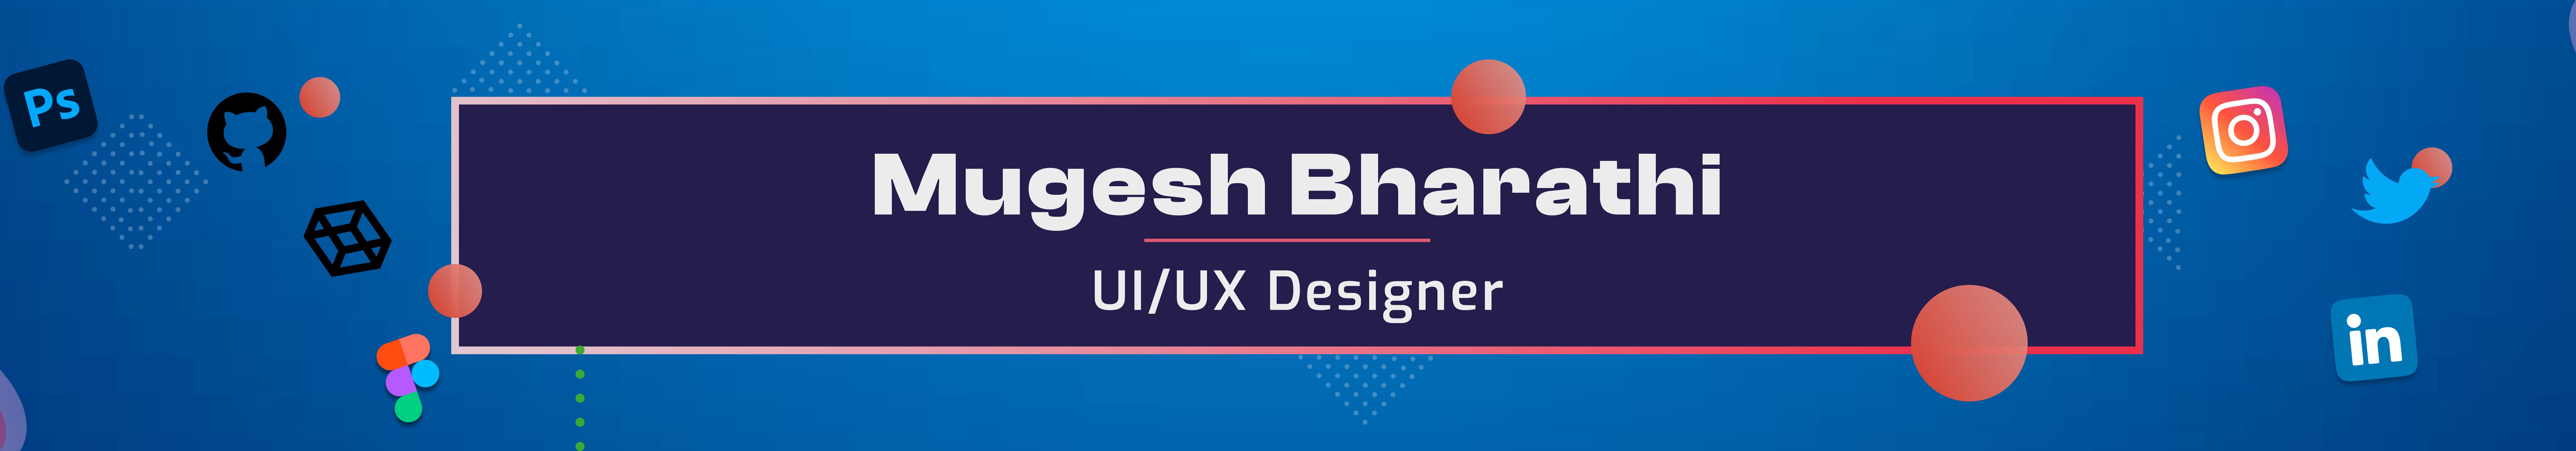 Mugesh Bharathi's profile banner